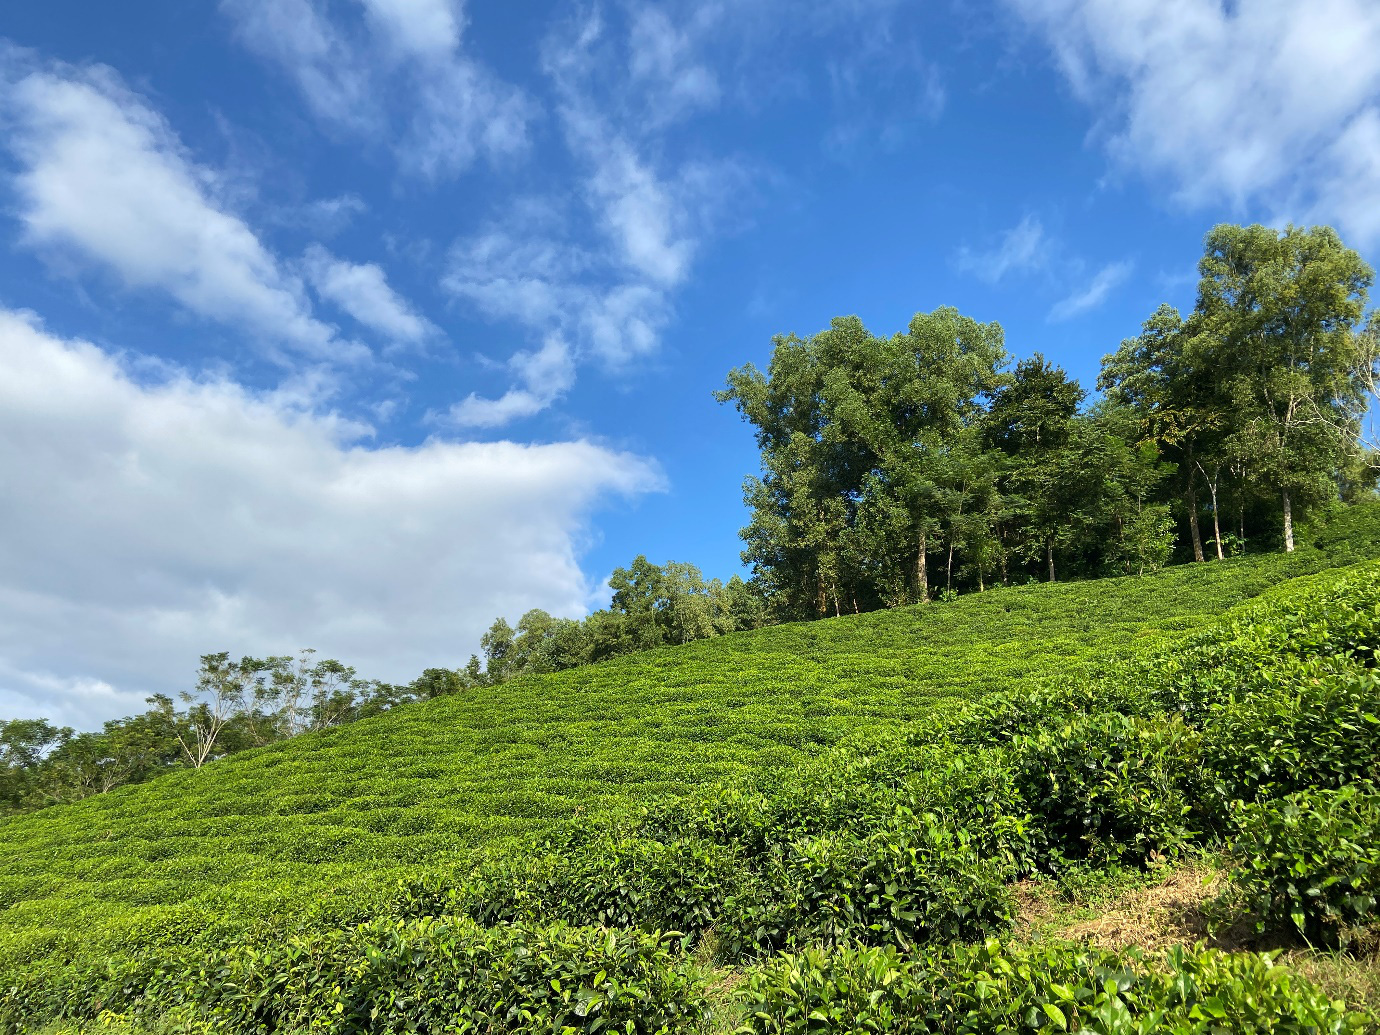 Thứ trà xanh làm từ cây chè sống nửa thế kỷ ở Thái Nguyên, giữ trọn hương vị truyền thống, ai uống cũng mê - Ảnh 2.